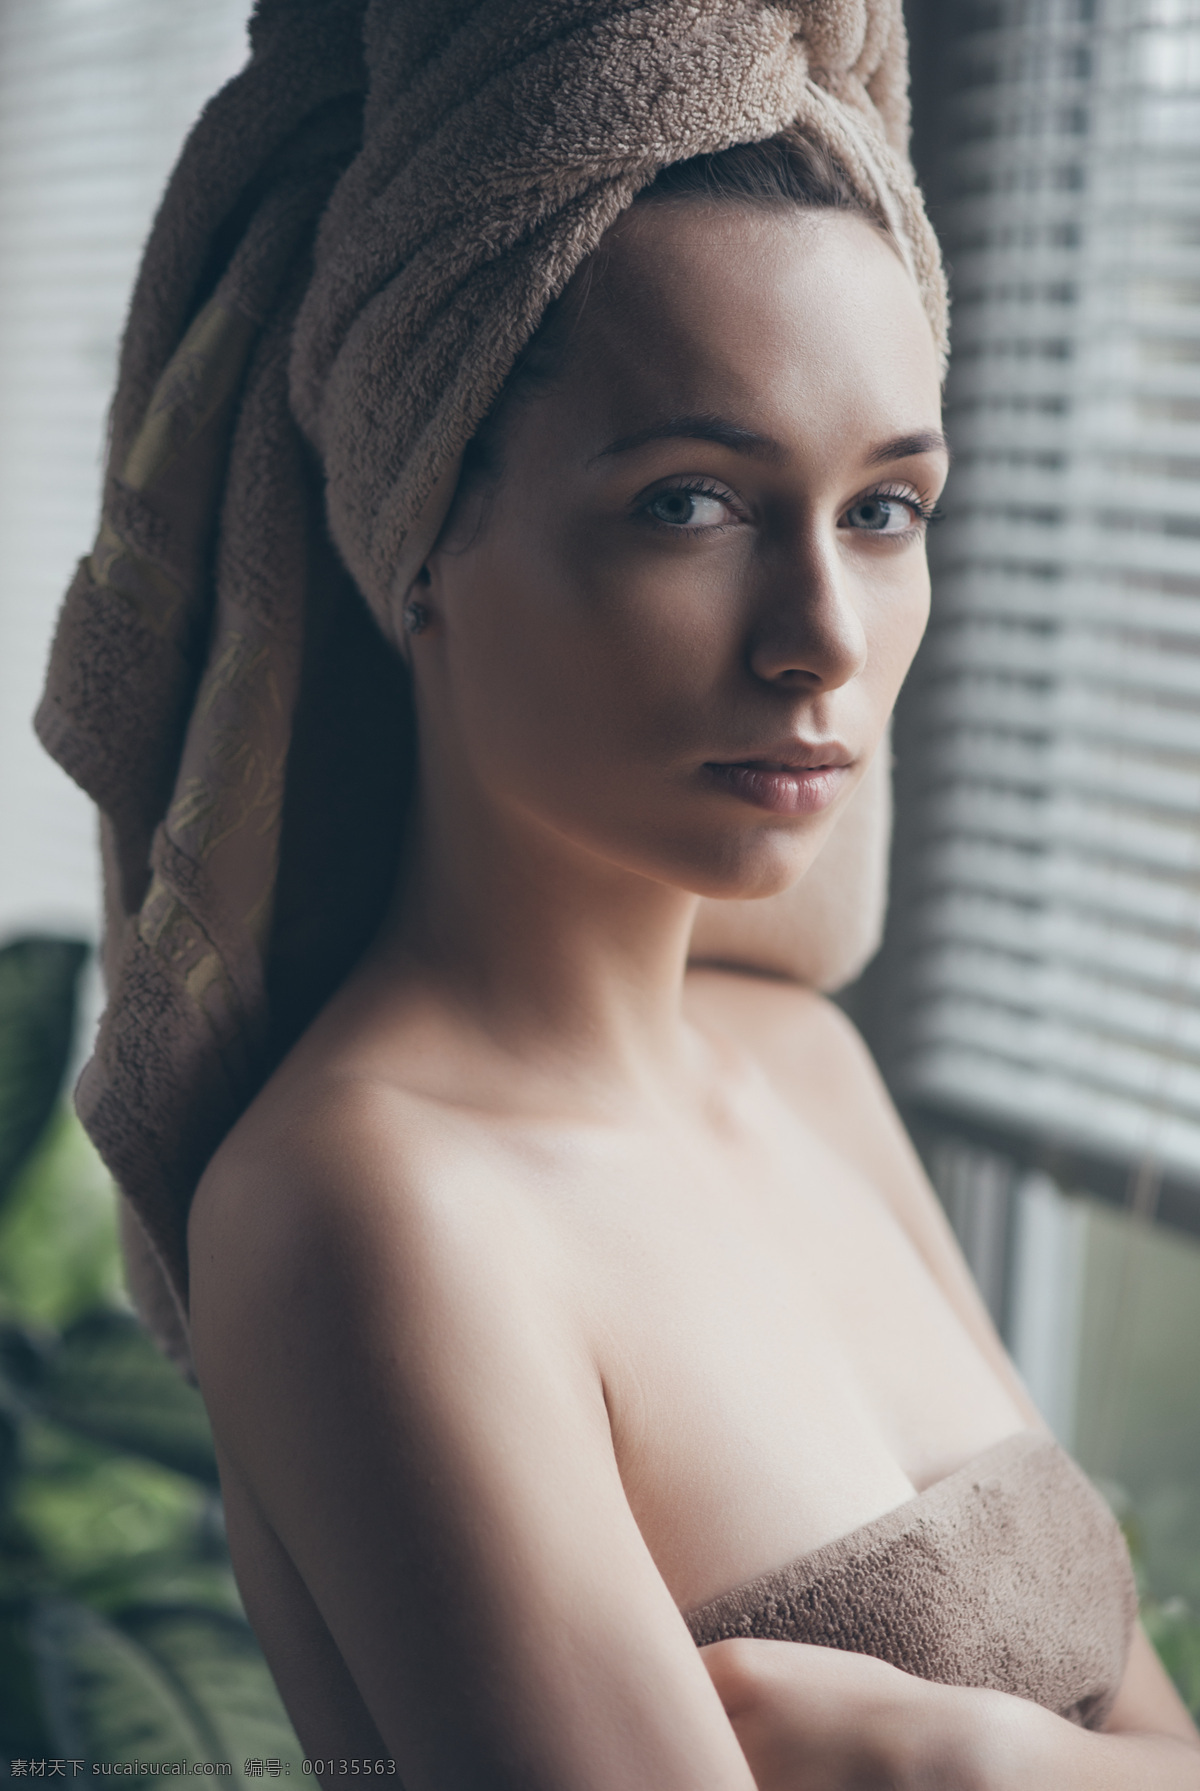 裹 浴巾 美女图片 性感美女 时尚美女 美女模特 美女写真 外国女性 欧美女人 人物图片